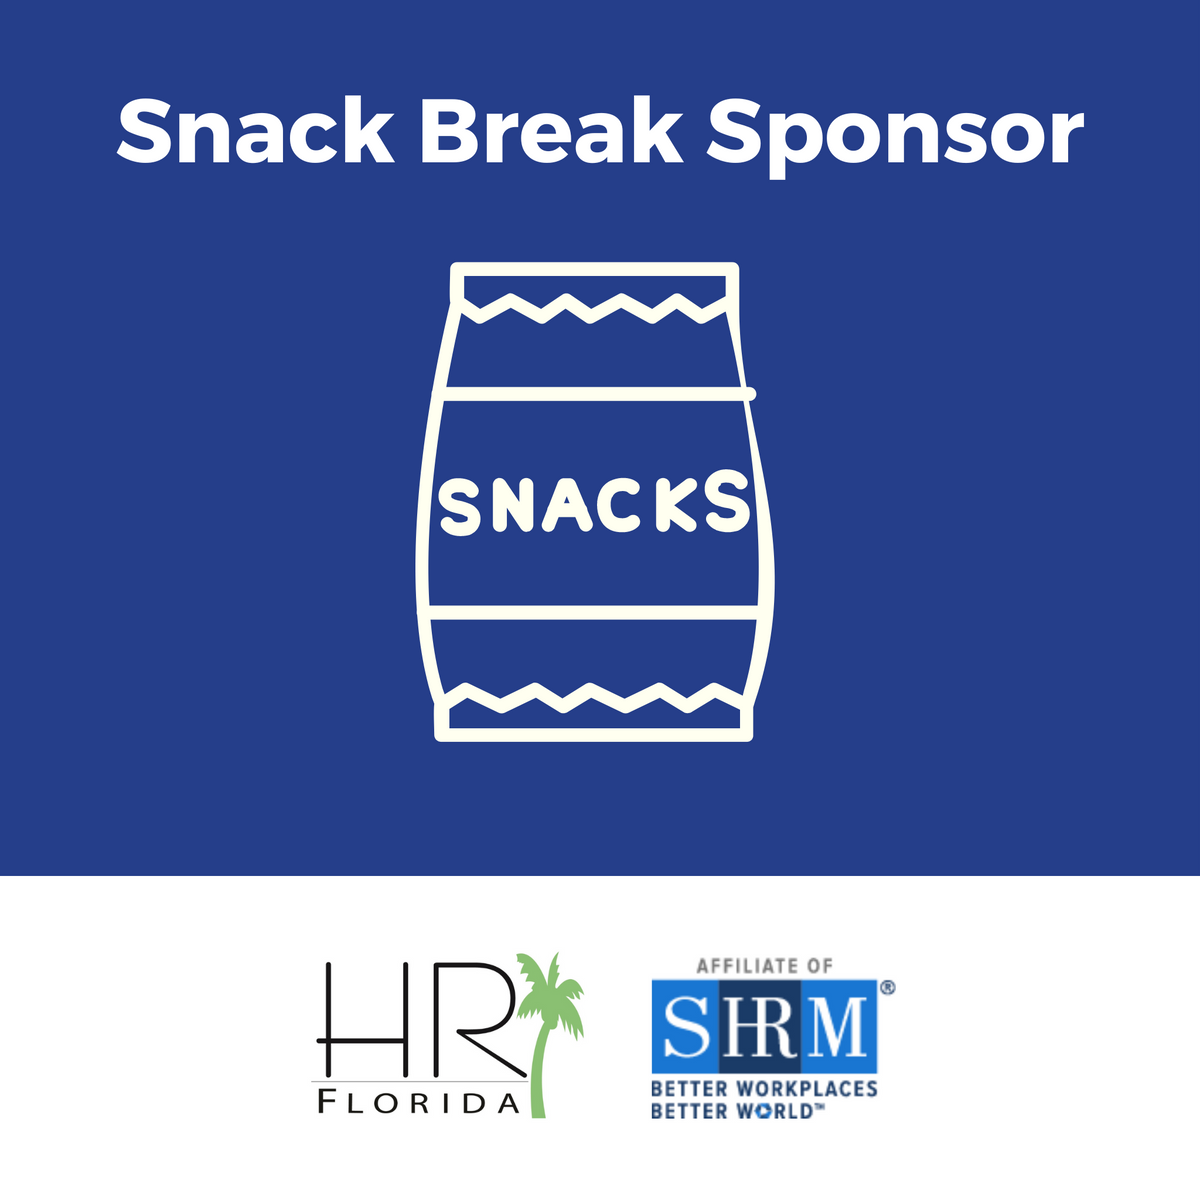 24 FL SHRM Legislative - Snack Break Sponsor